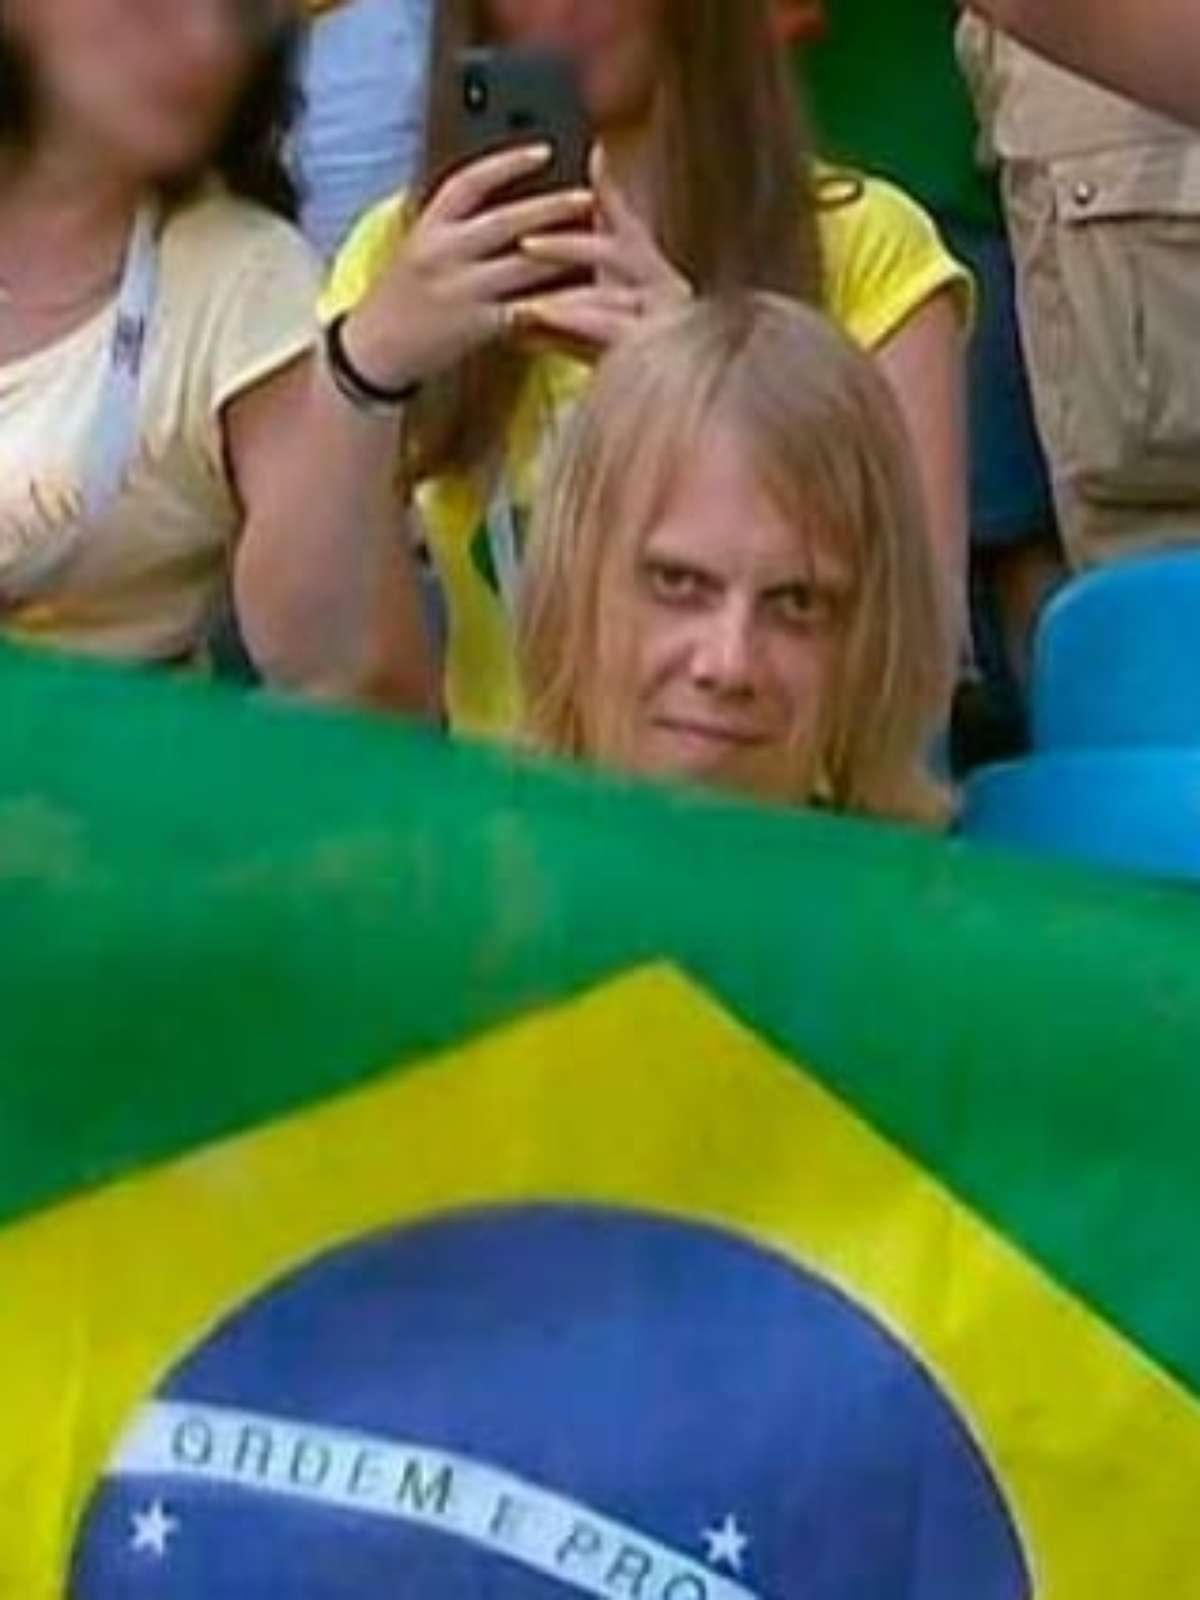 Torcedor com olhar assustador rende memes em jogo do Brasil